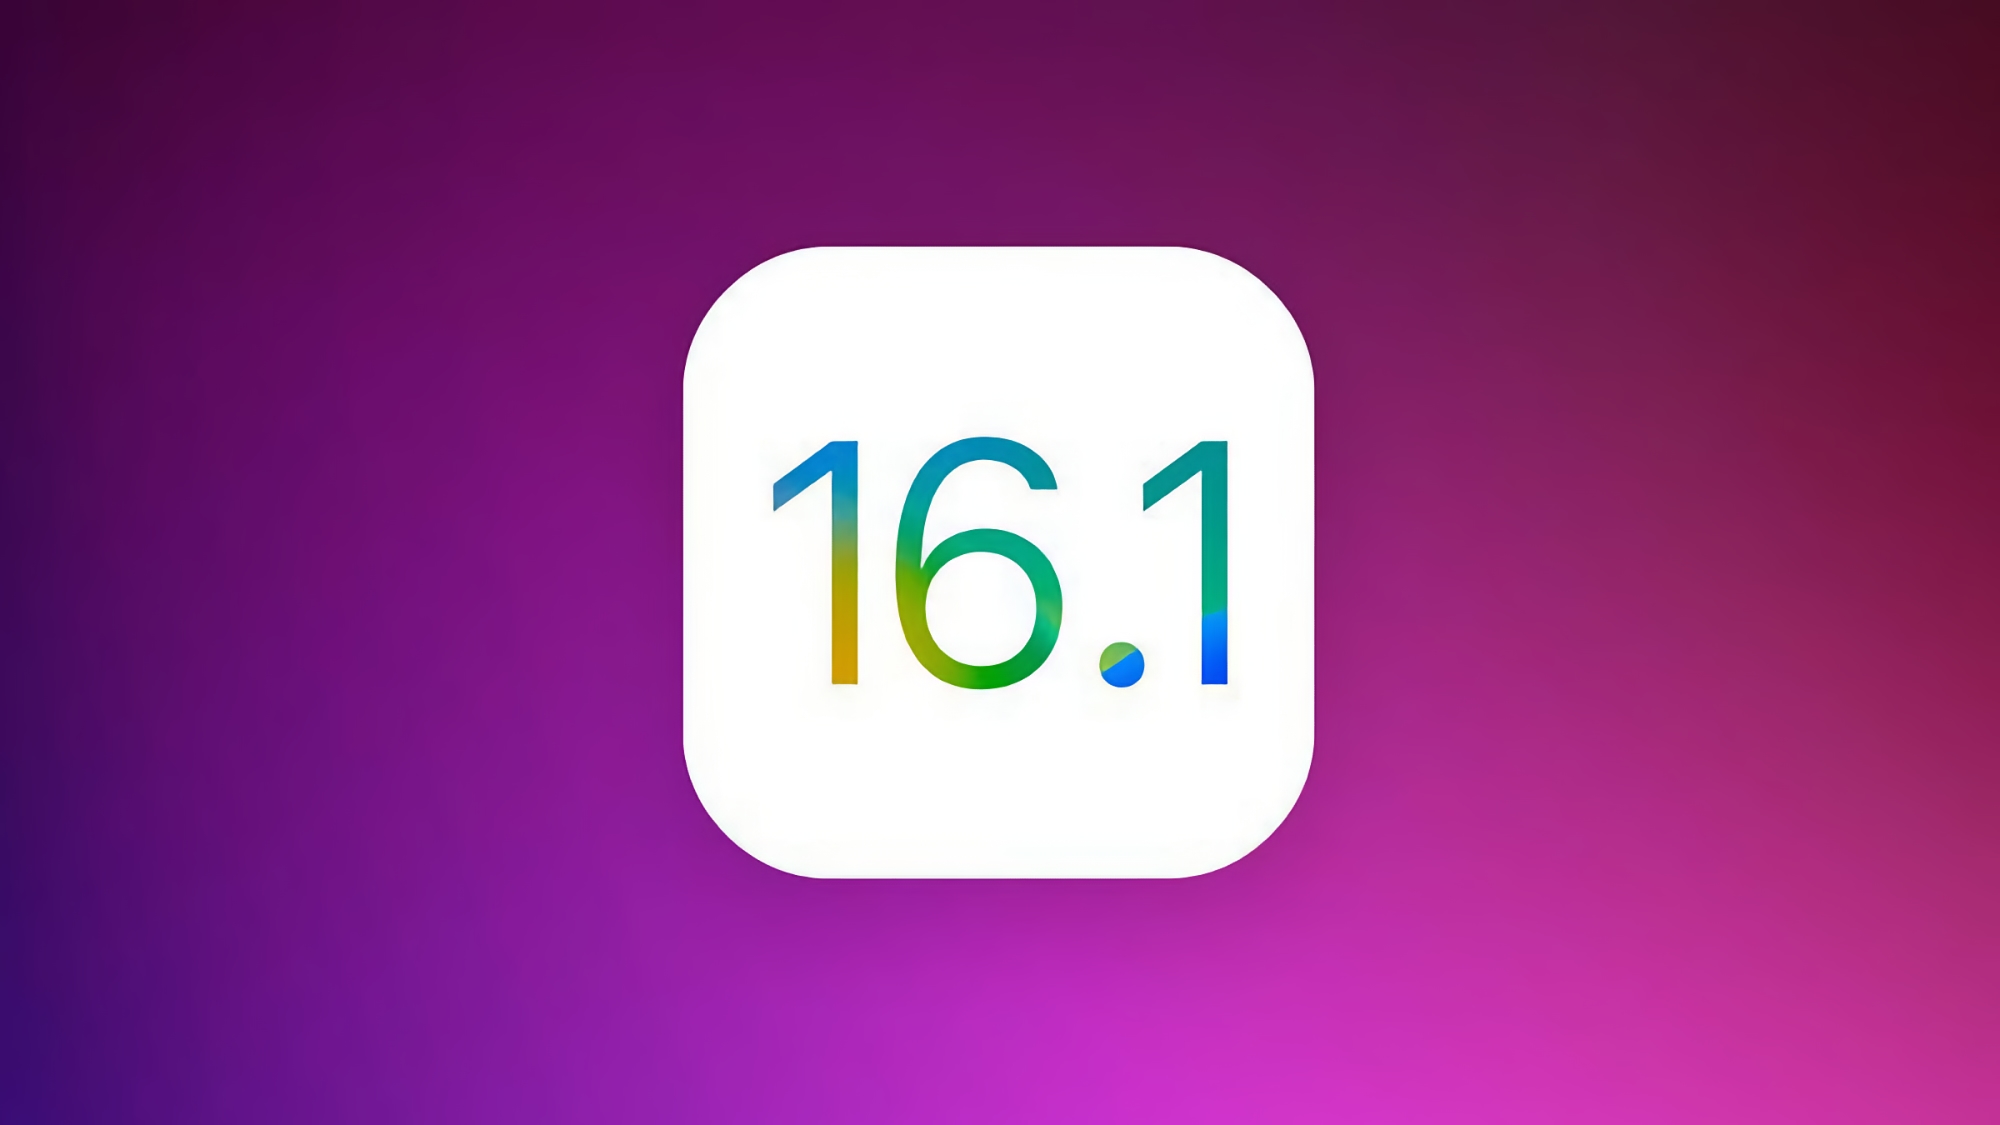 Apple a publié la version bêta d'iOS 16.1 : quelles sont les nouveautés ?